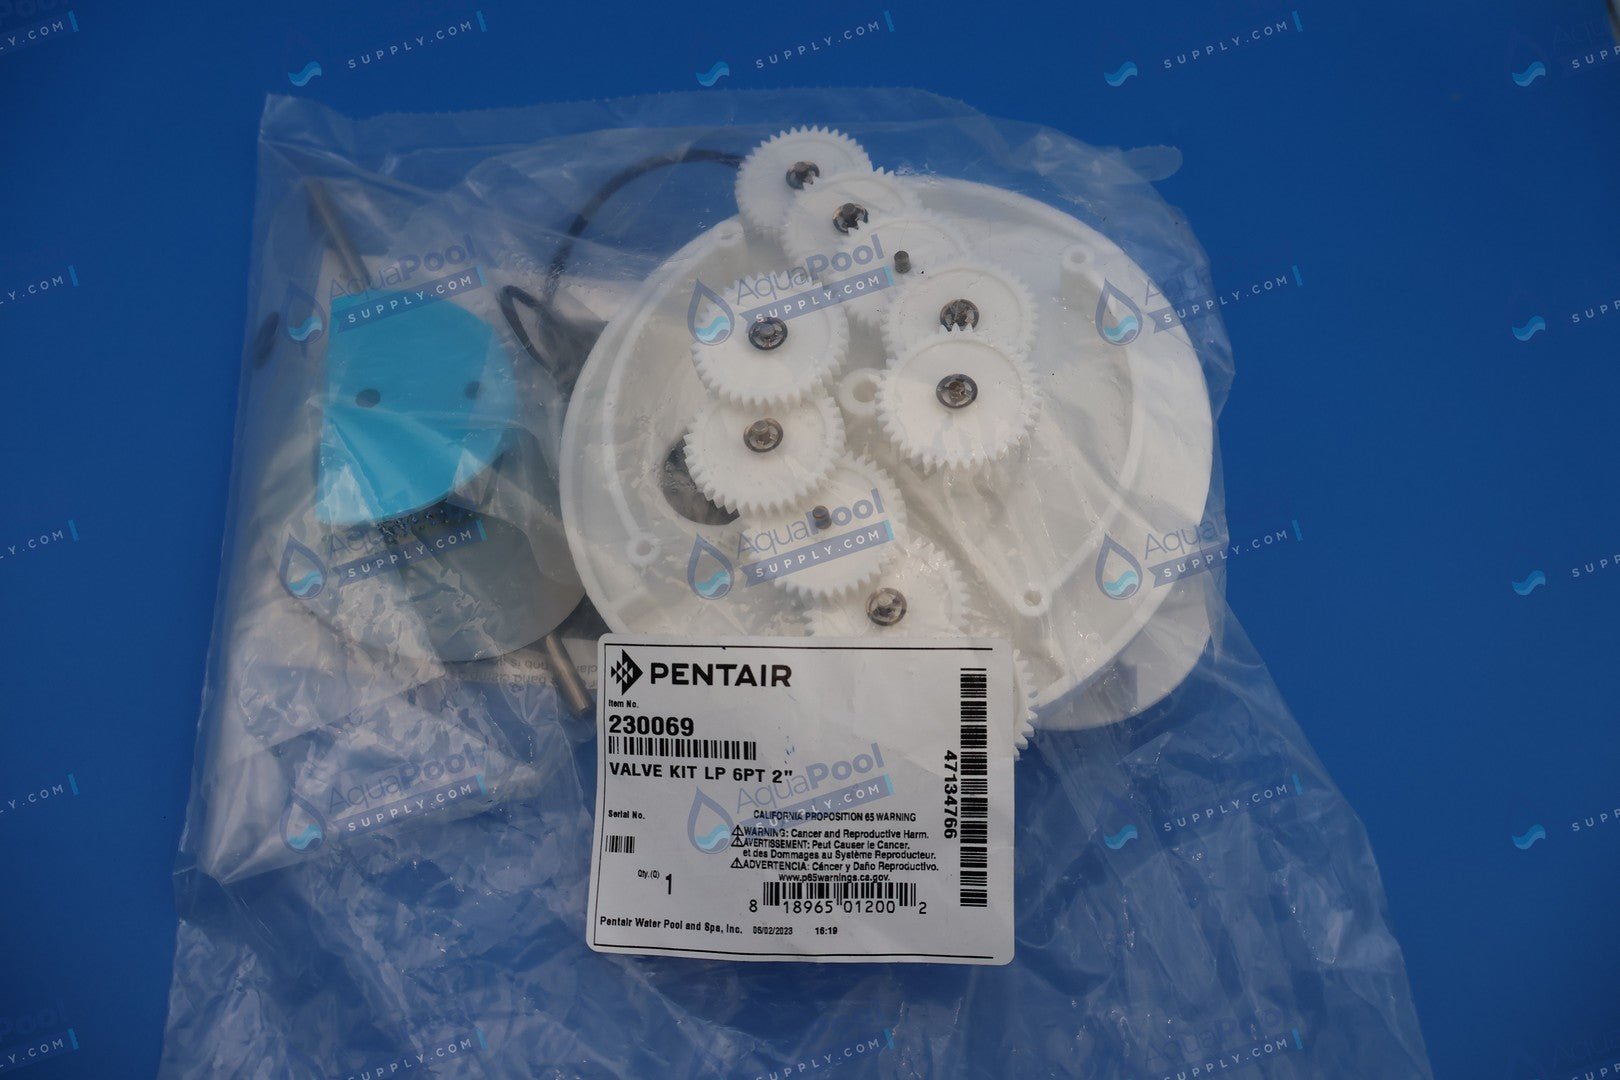 Pentair A&A 2" Low Profile 6 Port T-Valve Rebuild Gear Kit 230069 582928 - Pop-Up Valve Replacement Parts